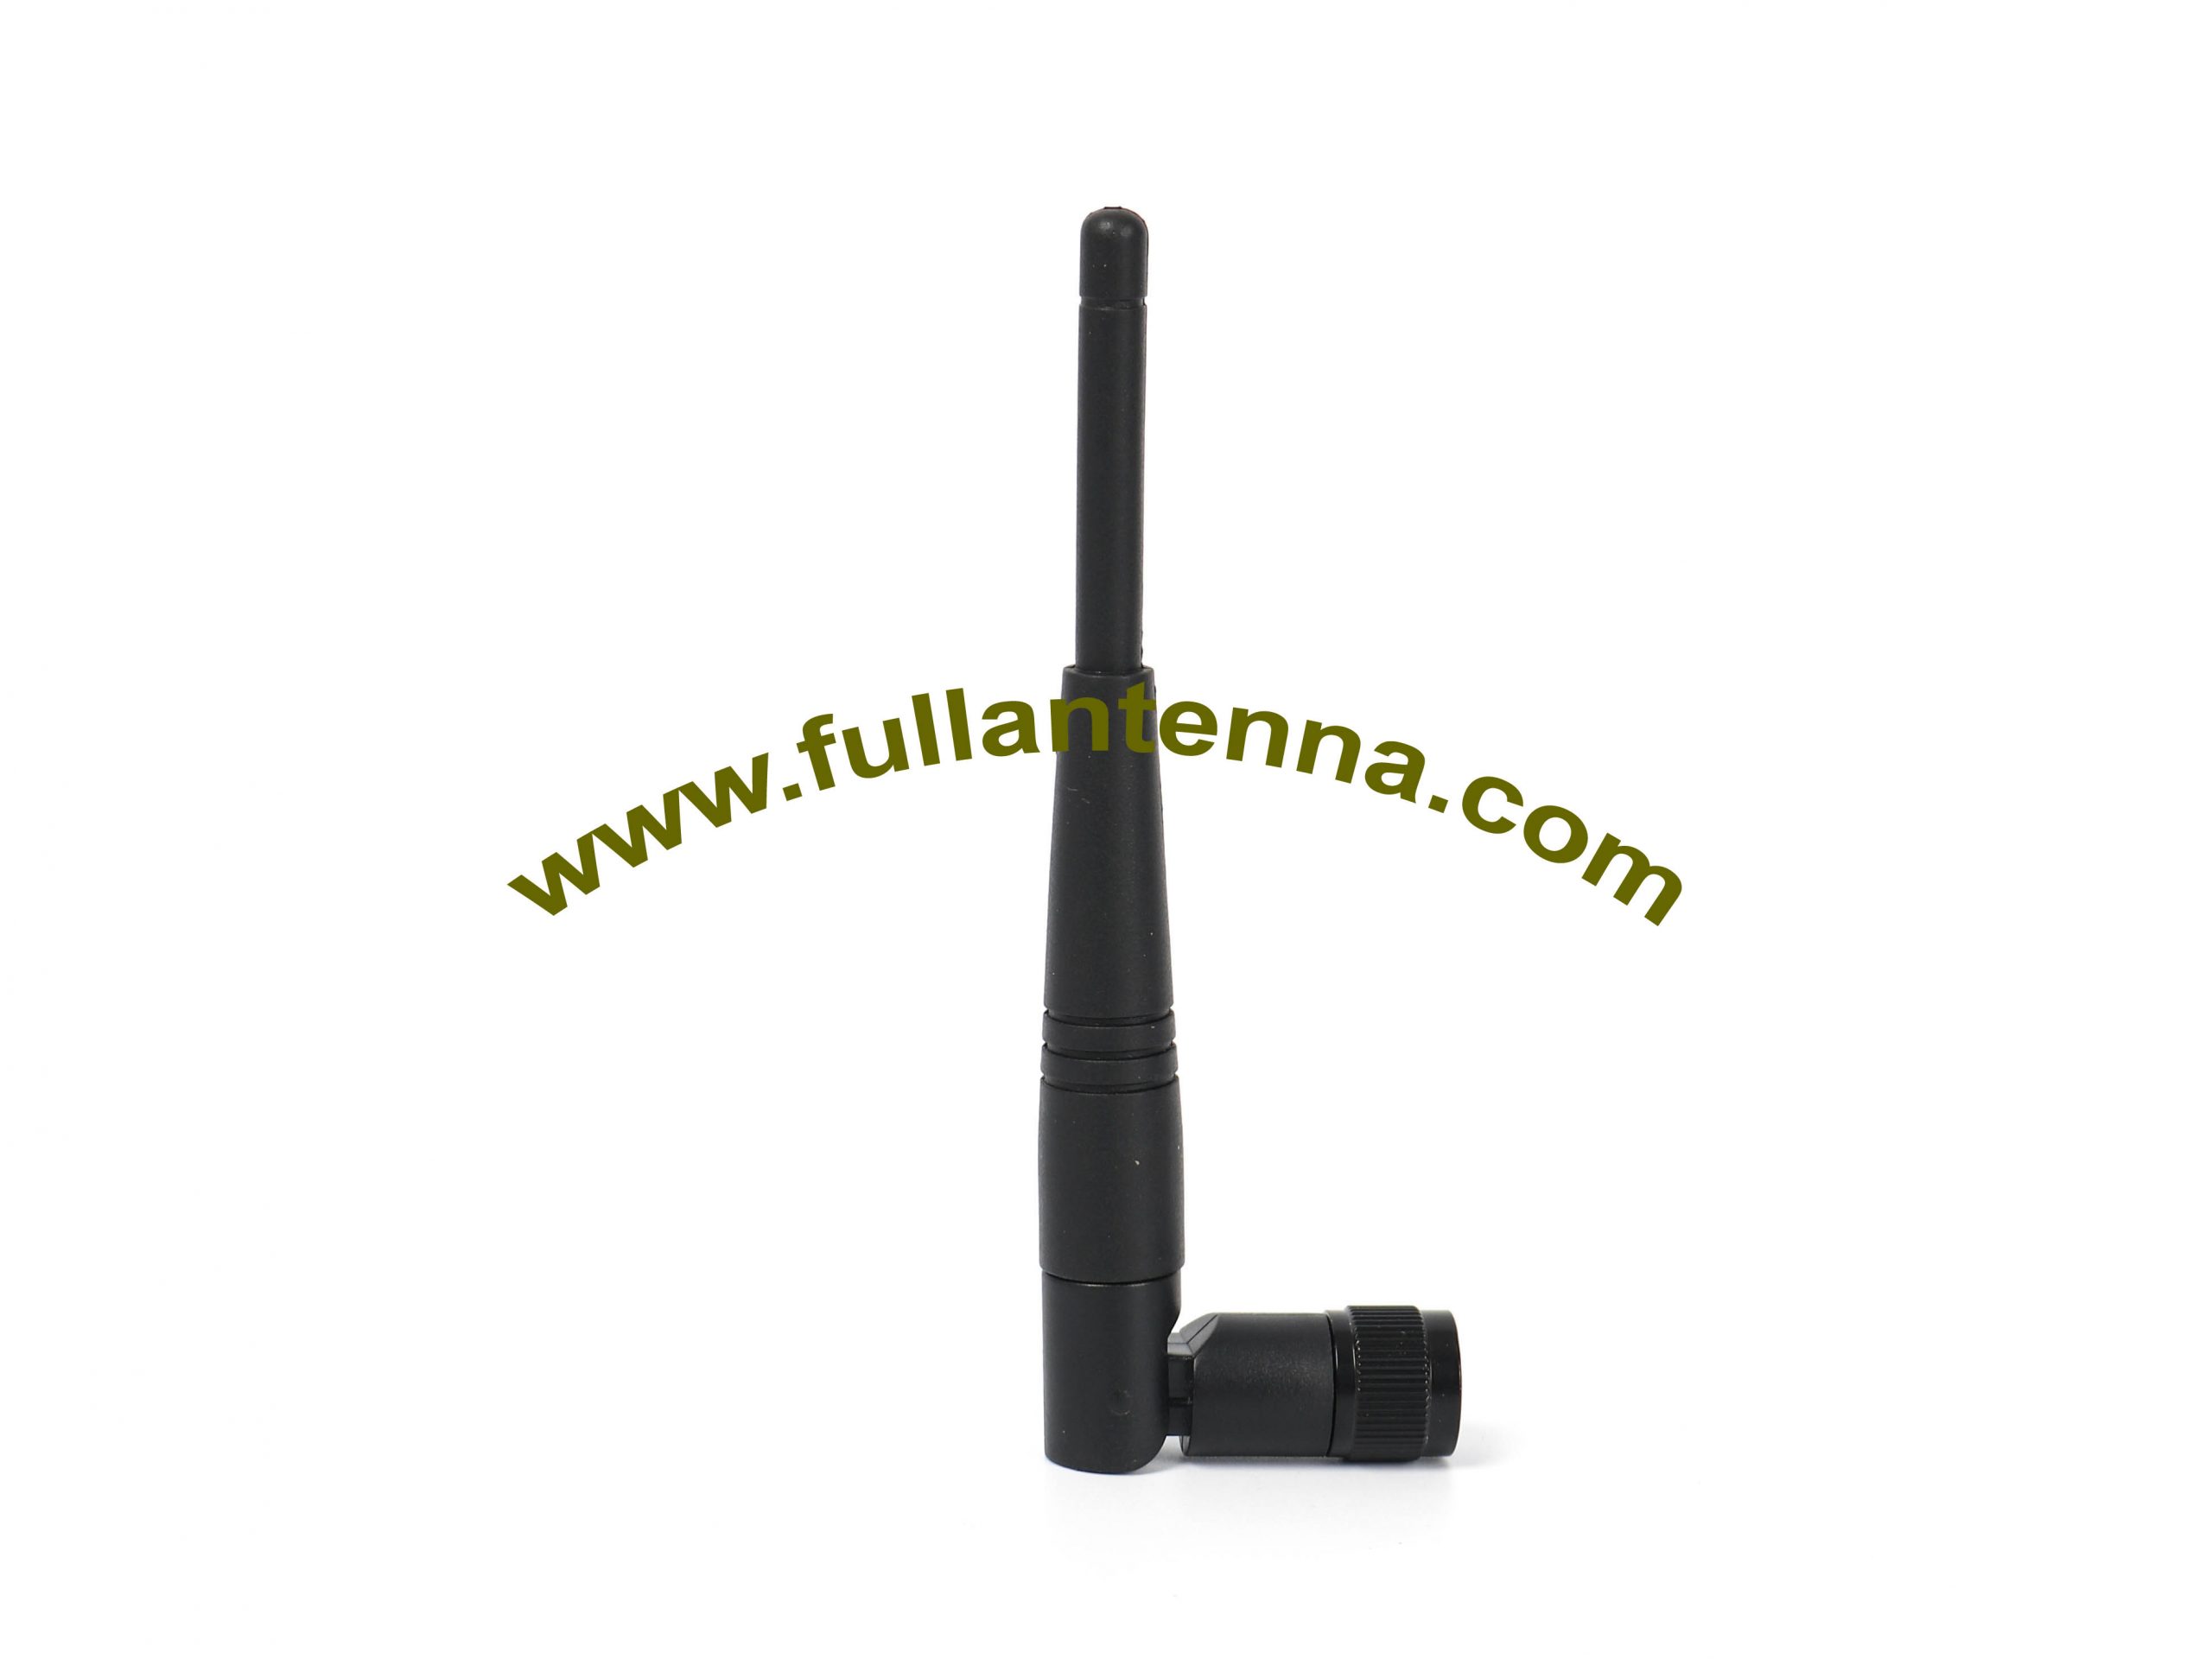 P / N: Antena de goma FA3G.0301,3G, conector SMA de ganancia 2.5dbi